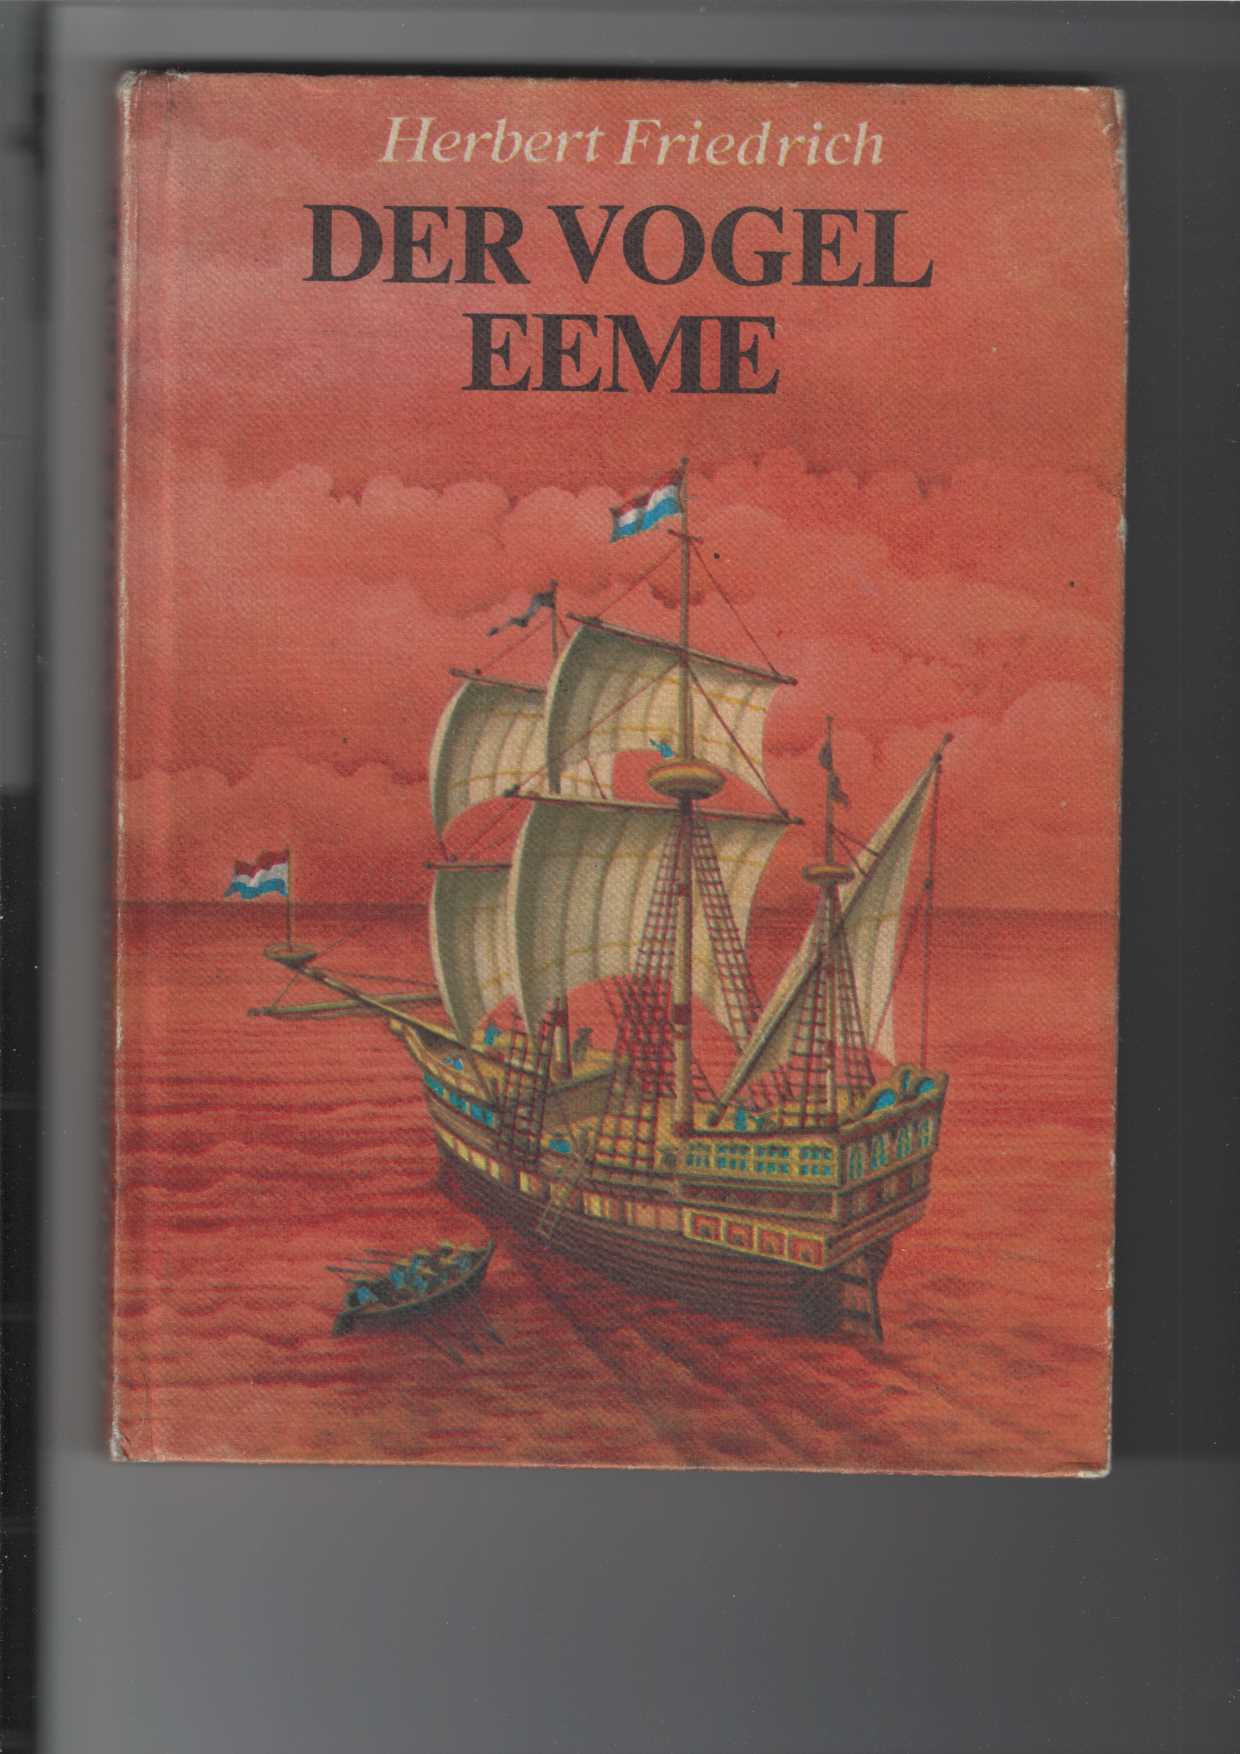 Der Vogel Eeme. Die Ostindienreise des Holländers Cornelis de Houtman 1595 - 1597. Roman. Illustrationen von Gerhard Preuß. - Friedrich, Herbert